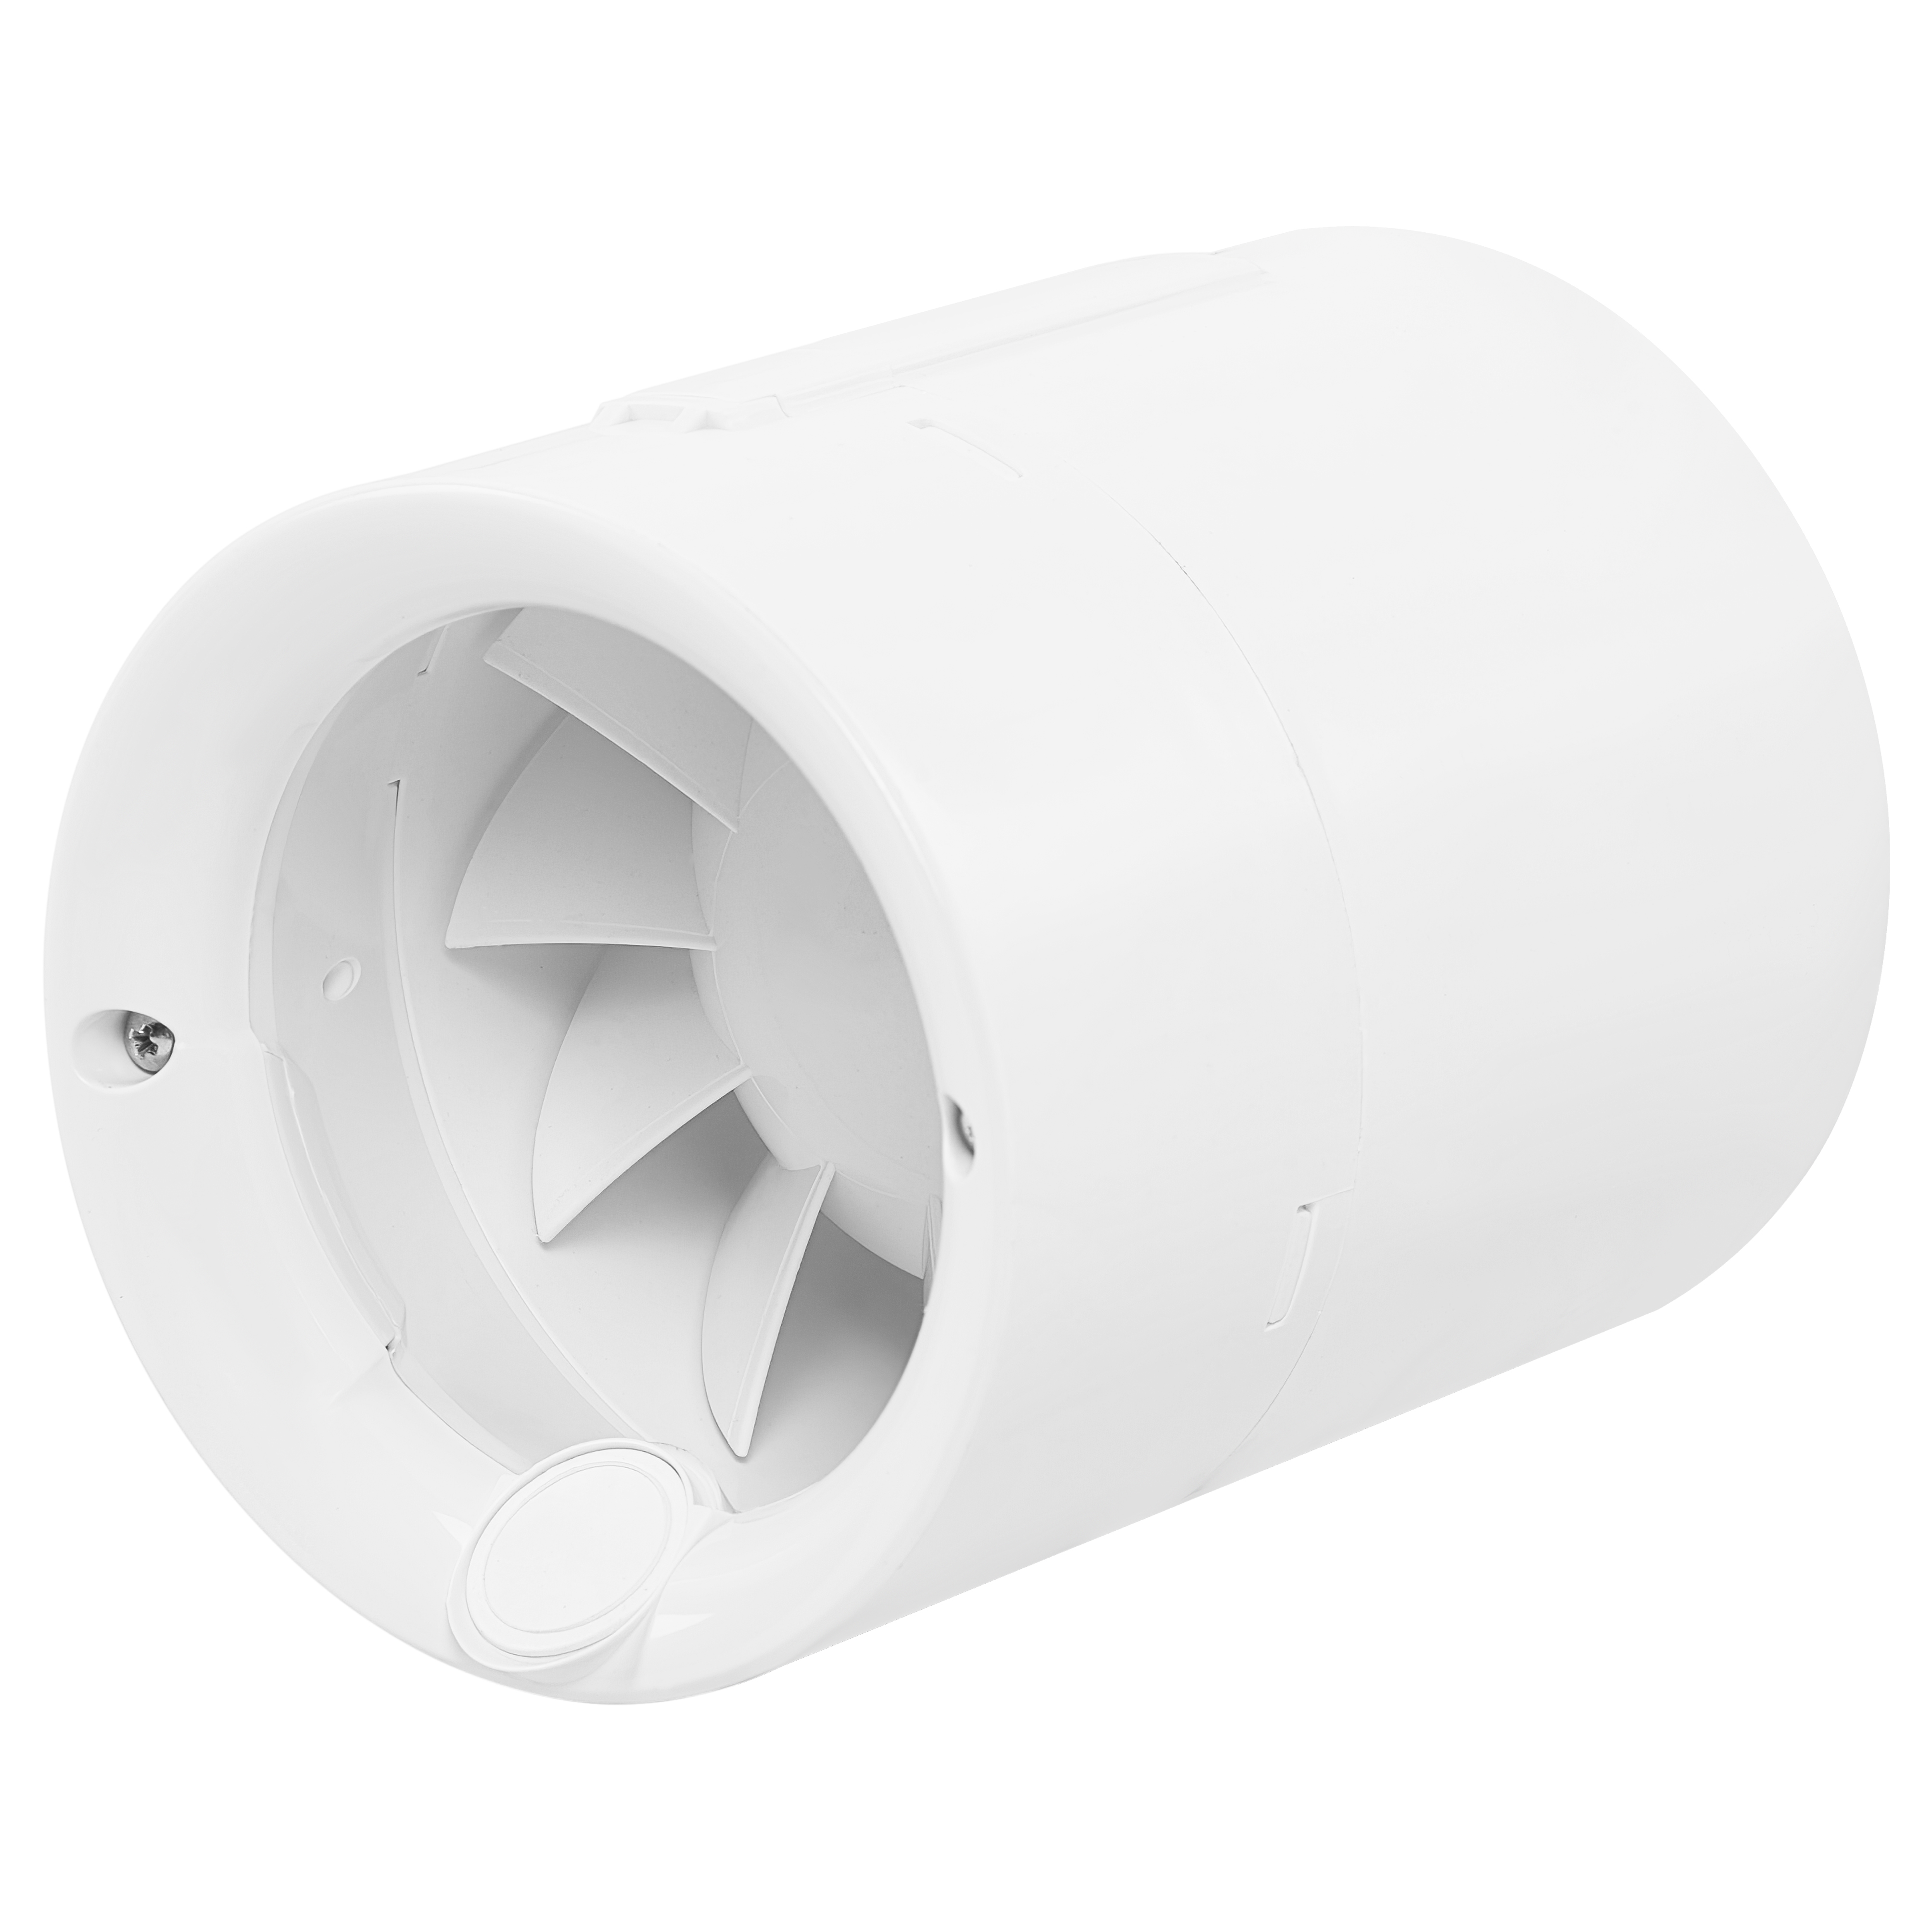 Характеристики витяжний канальний вентилятор Soler&Palau Silentub-100